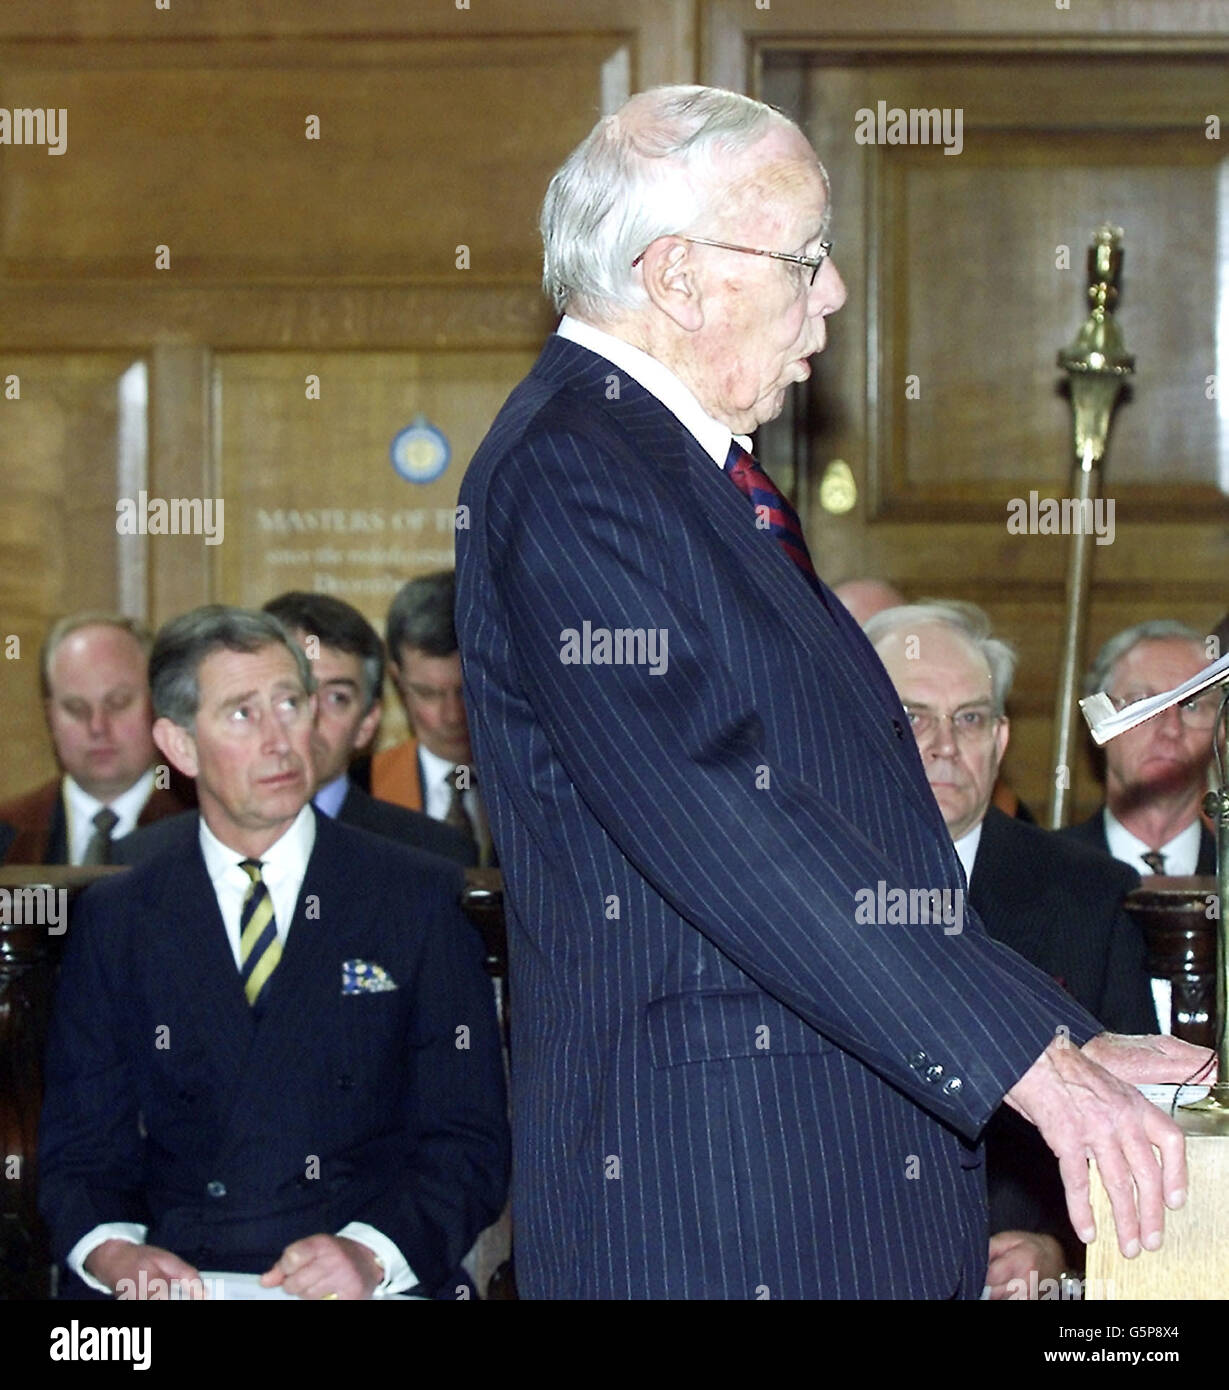 Le Prince de Galles (arrière-plan gauche) écoute Lord Deedes, ancien rédacteur en chef du Daily Telegraph, lors de son allocution à un service de l'église St Bride de Fleet Street à Londres, pour célébrer 300 ans de l'industrie de la presse à Fleet Street. Banque D'Images